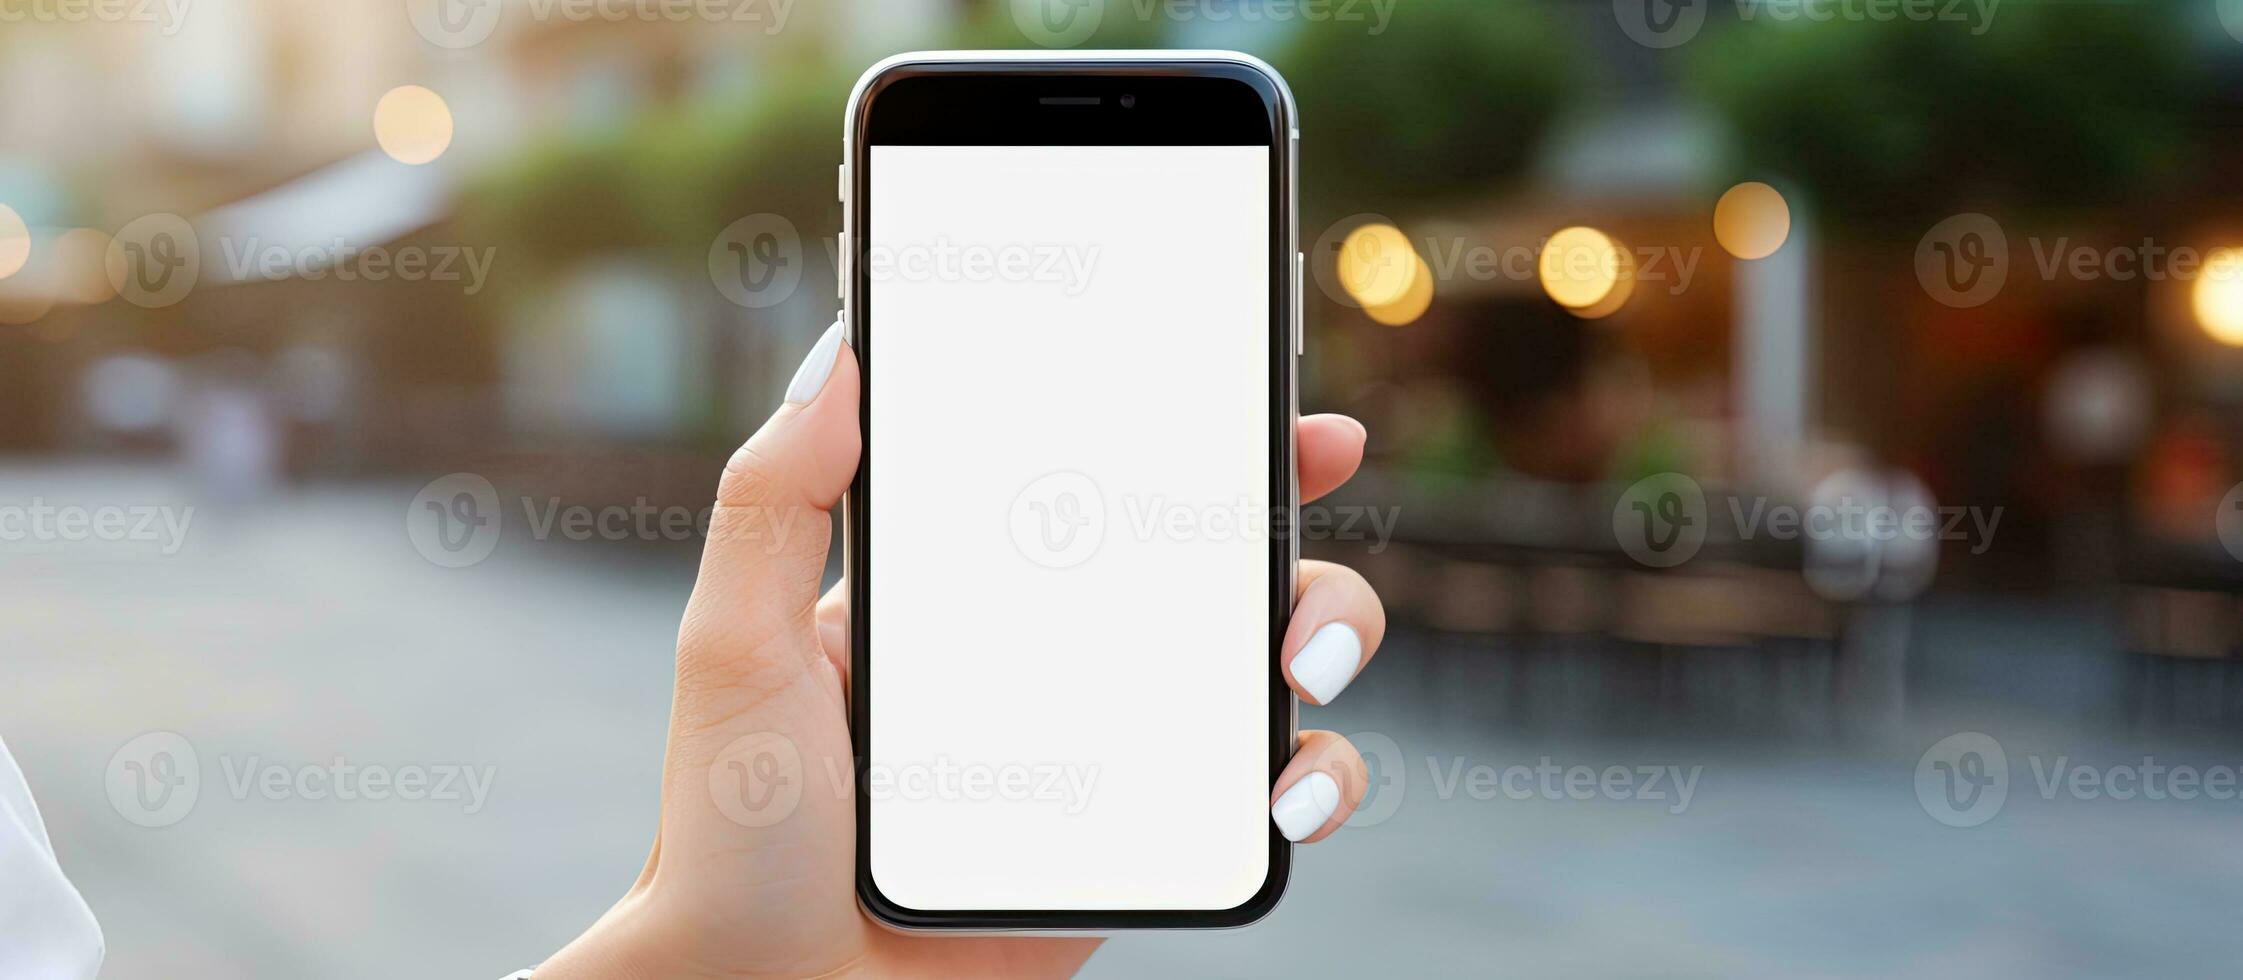 Frau s Hände halten Smartphone im städtisch Rahmen lesen Text Botschaft auf das Bildschirm foto